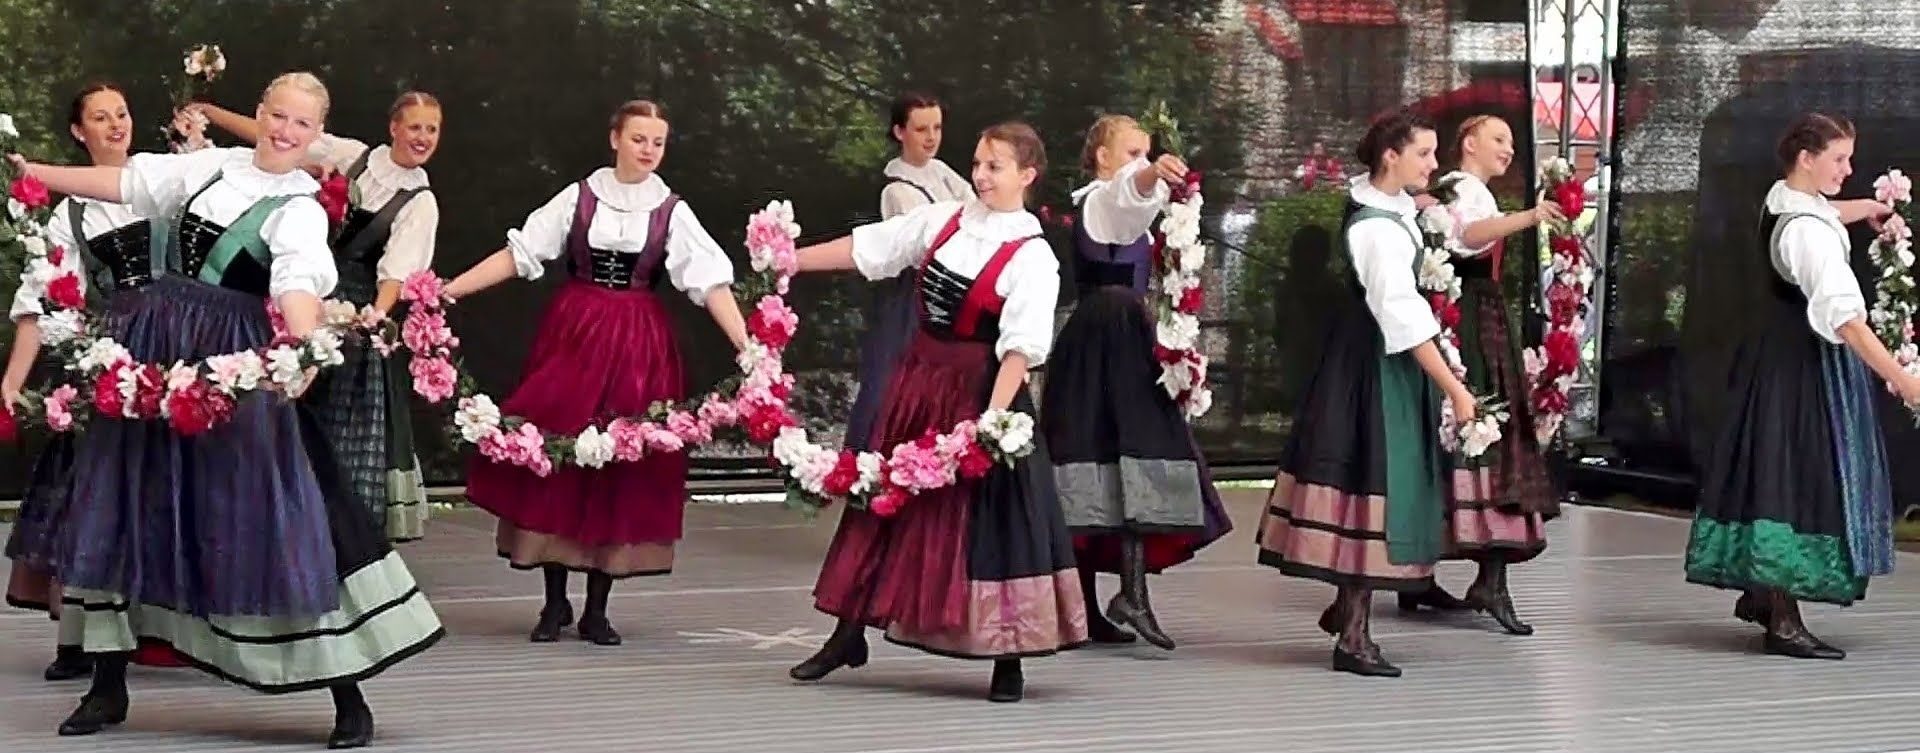 Женщины танцуют берлинскую польку